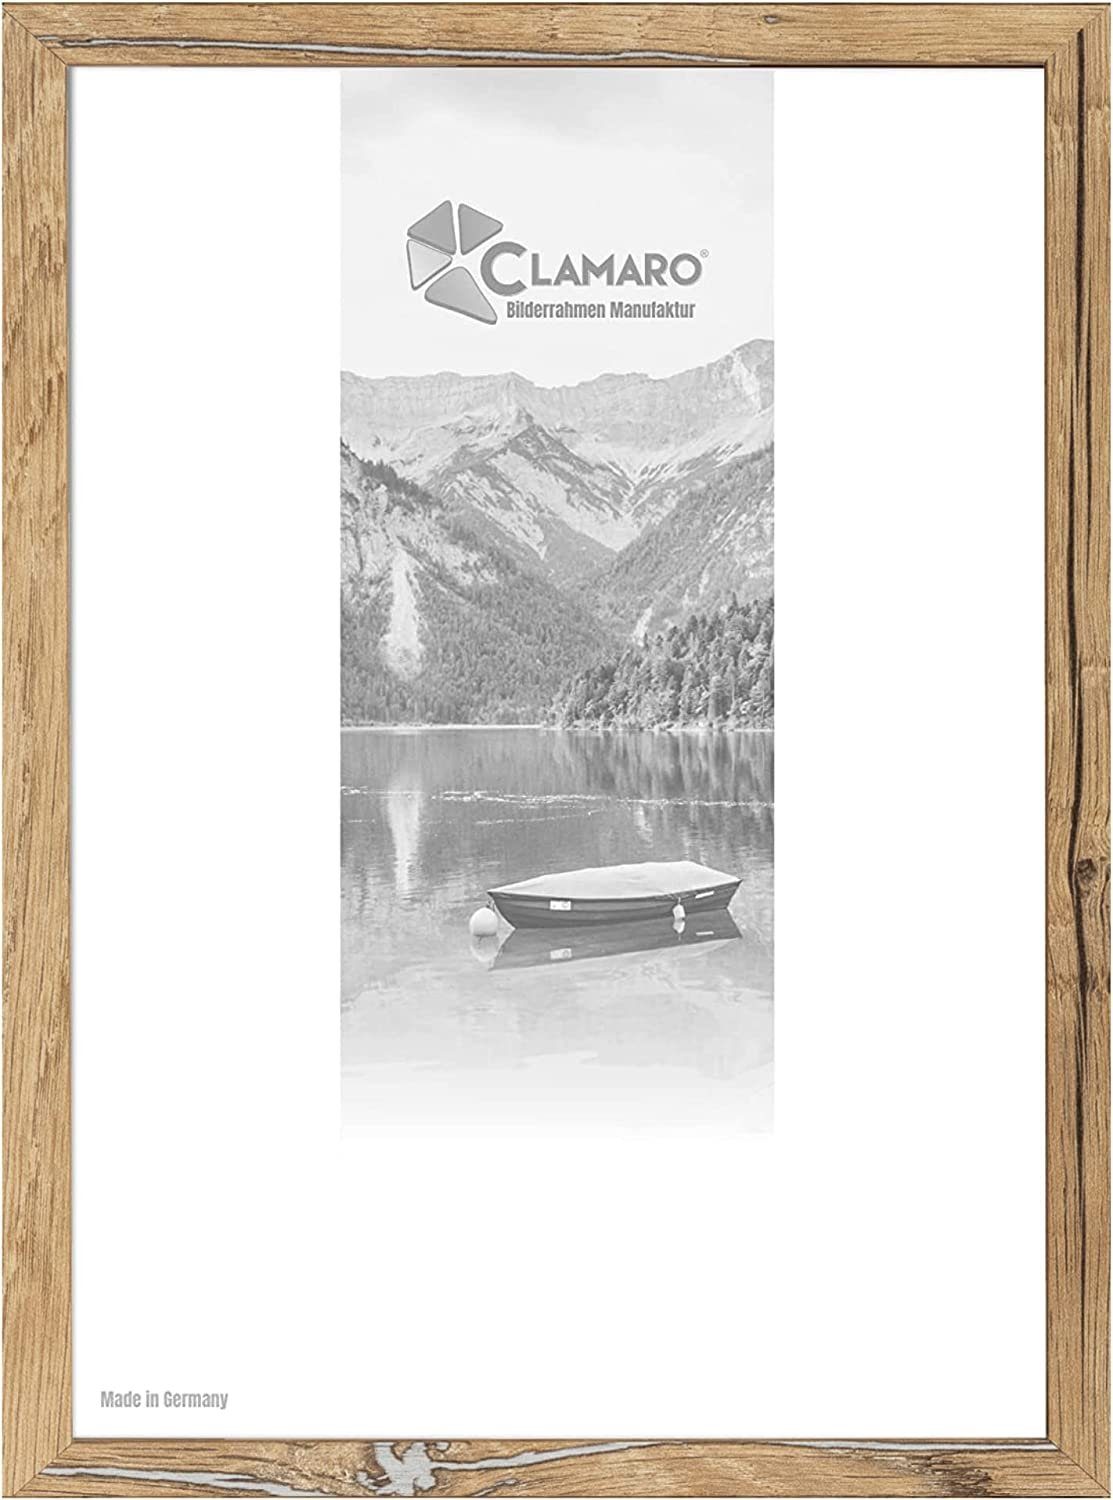 Clamaro Bilderrahmen Bilderrahmen Eiche Altholz CLAMARO Collage nach Maß FSC® Holz Modern eckig M3016 13x18 in Eiche Altholz